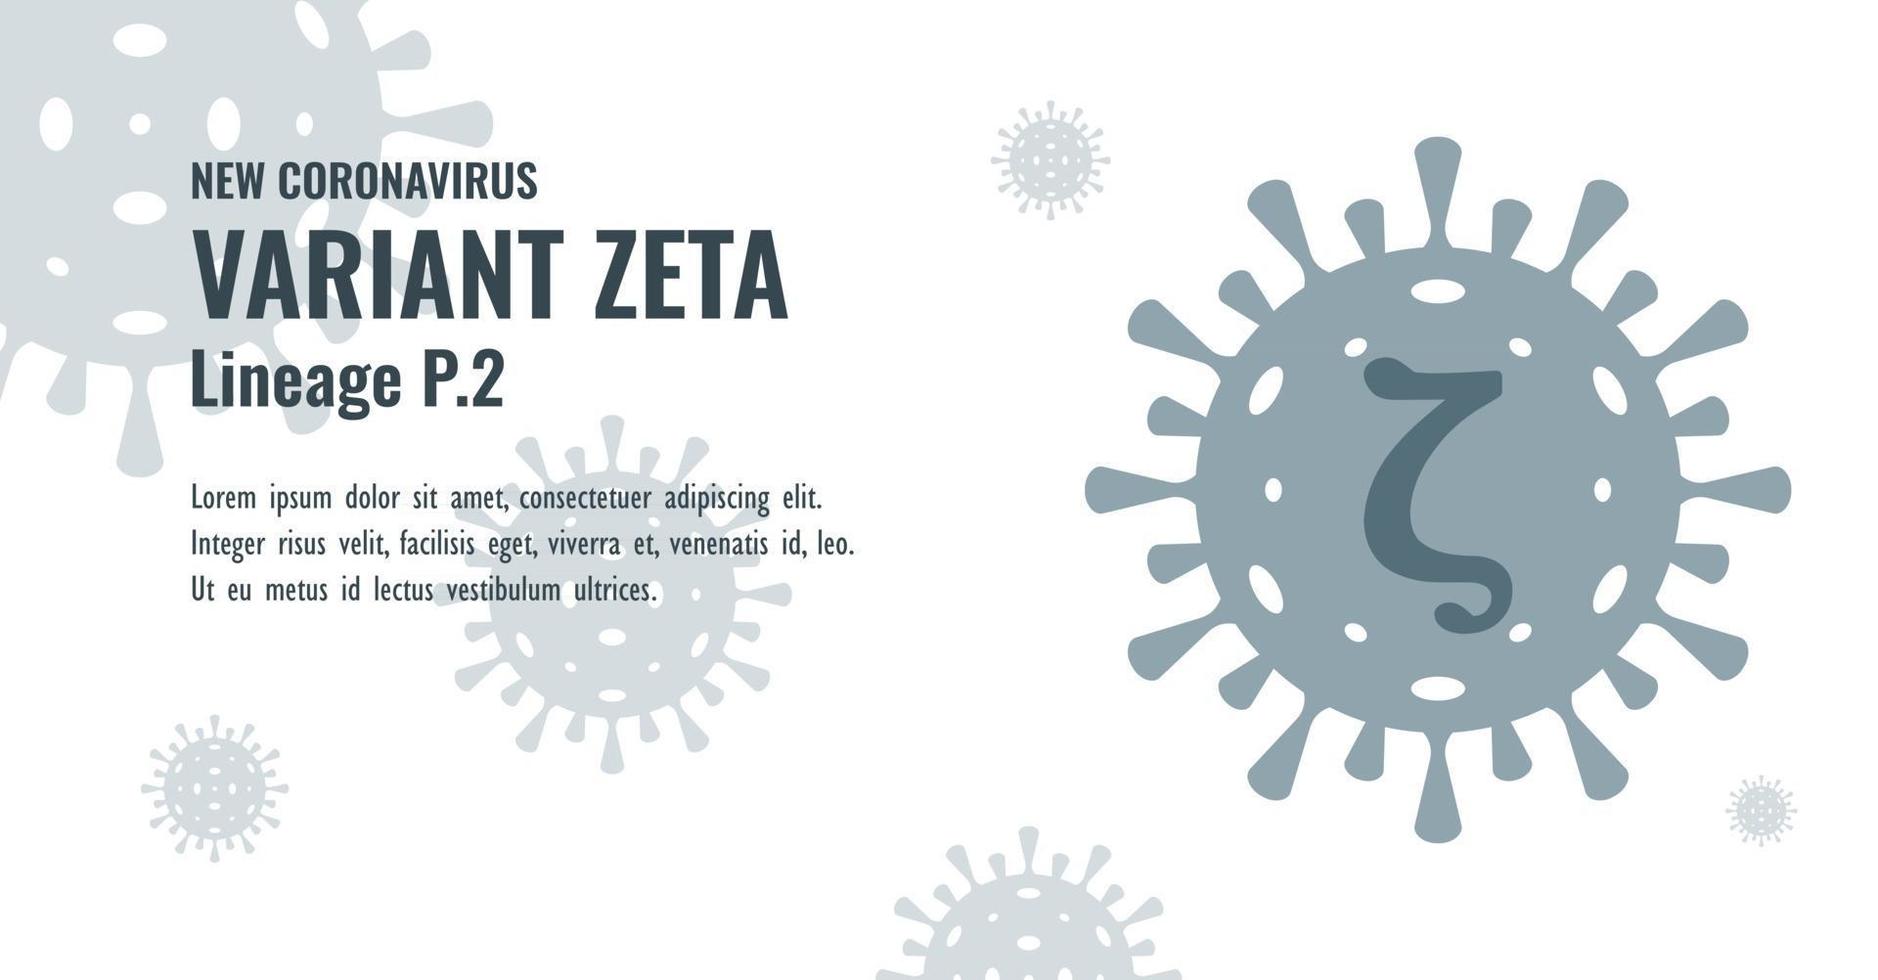 nytt coronavirus eller sars-cov-2 variant zeta p.2 illustration vektor